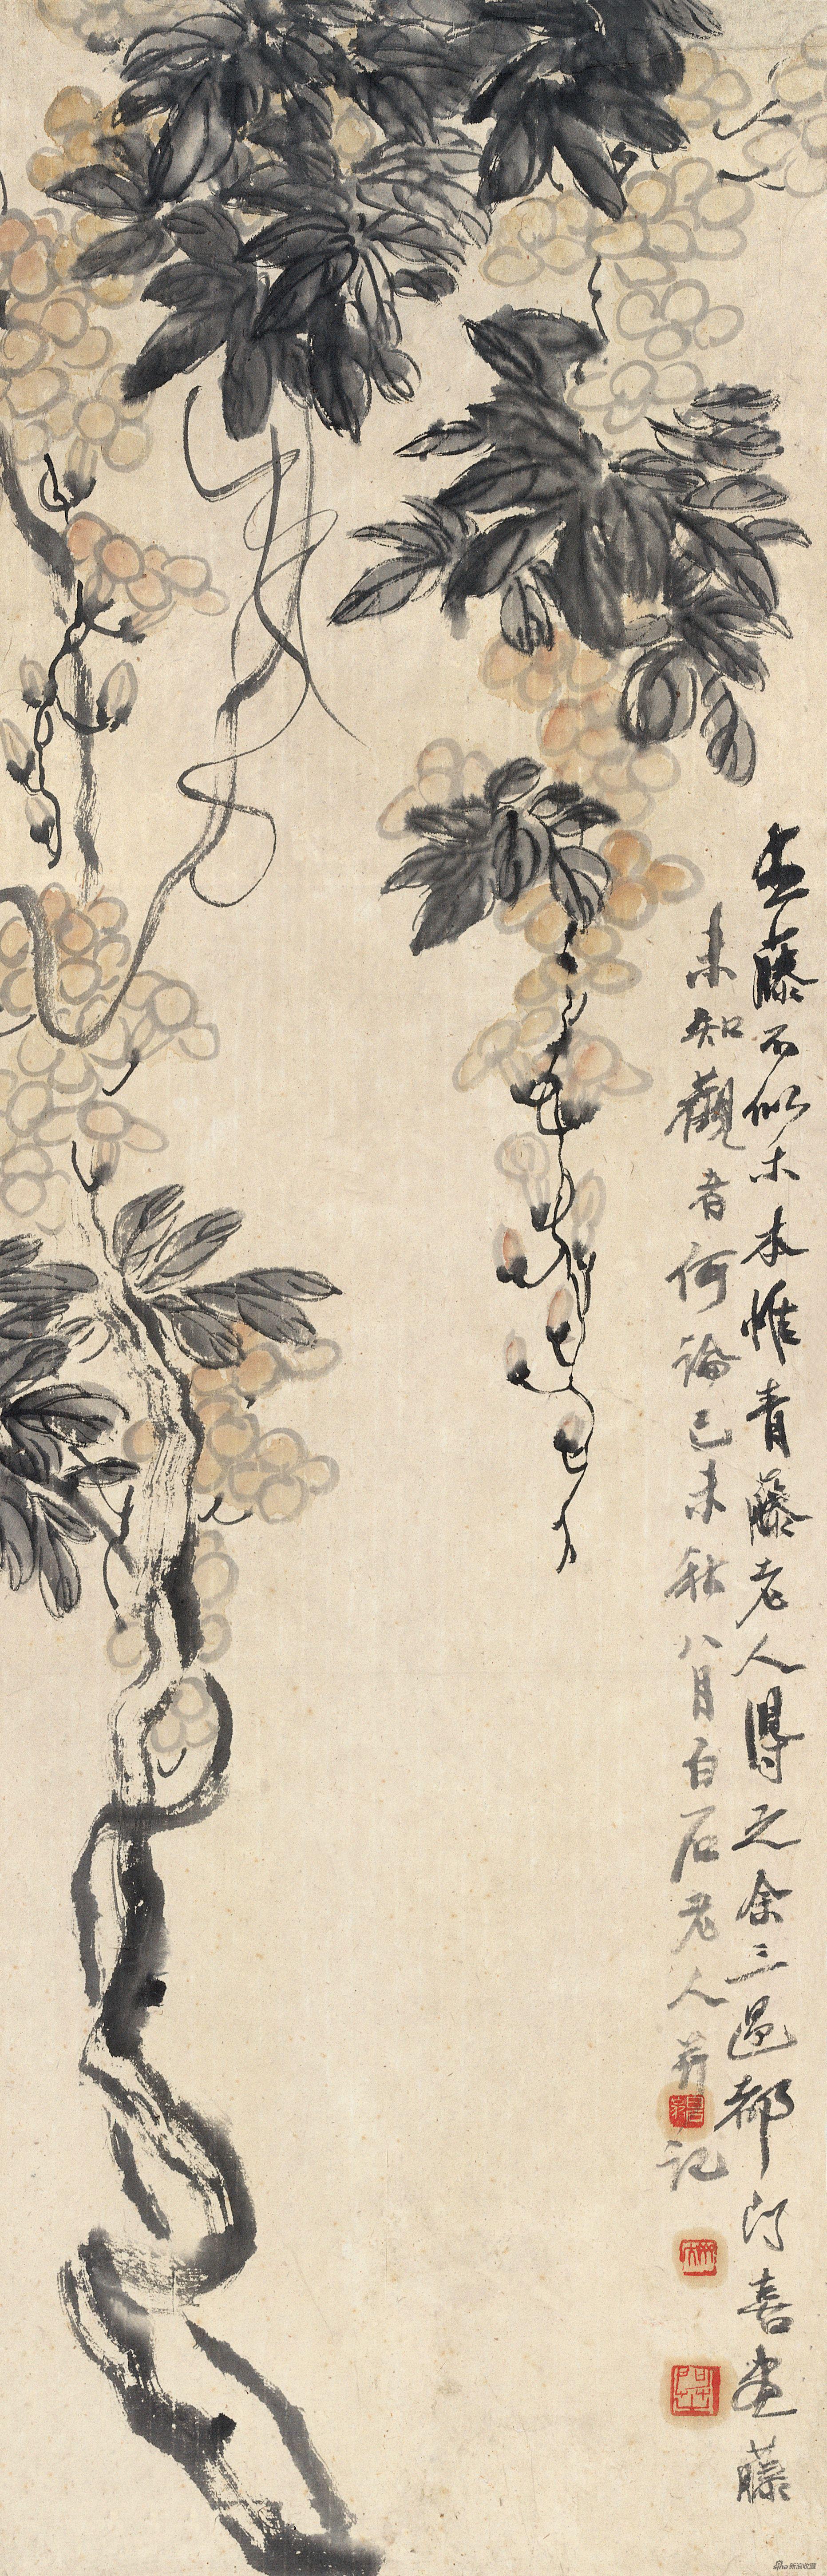 紫藤图 齐白石 106cm×34cm 纸本设色 1919年 北京画院藏